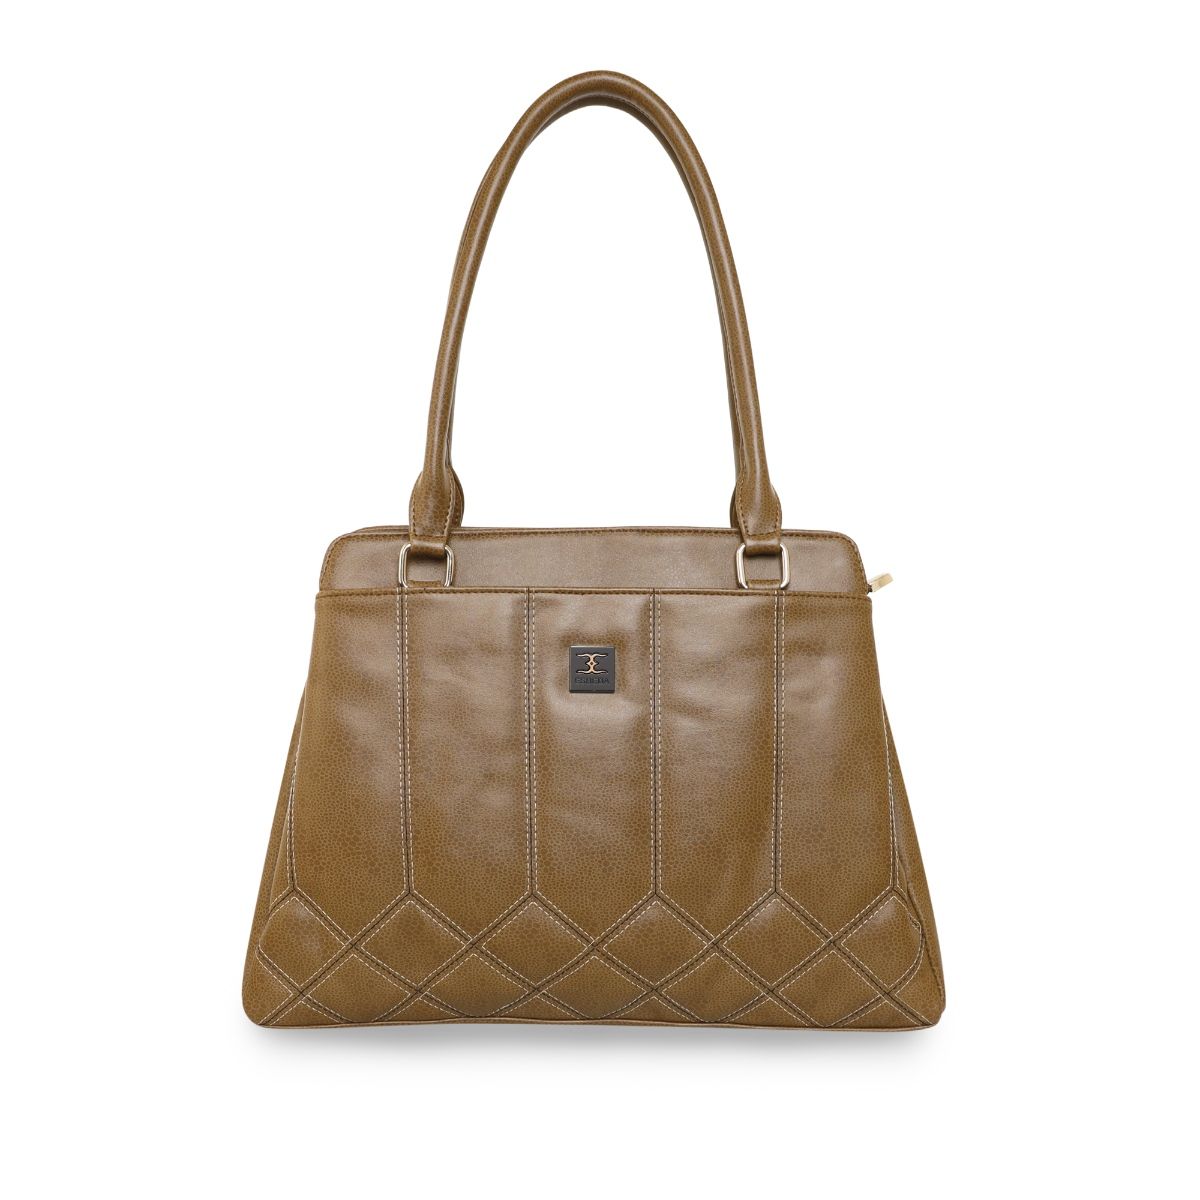 Get Contrast Handles Detail Tan Trapazoidal Handheld Bag at ₹ 2590 | LBB  Shop